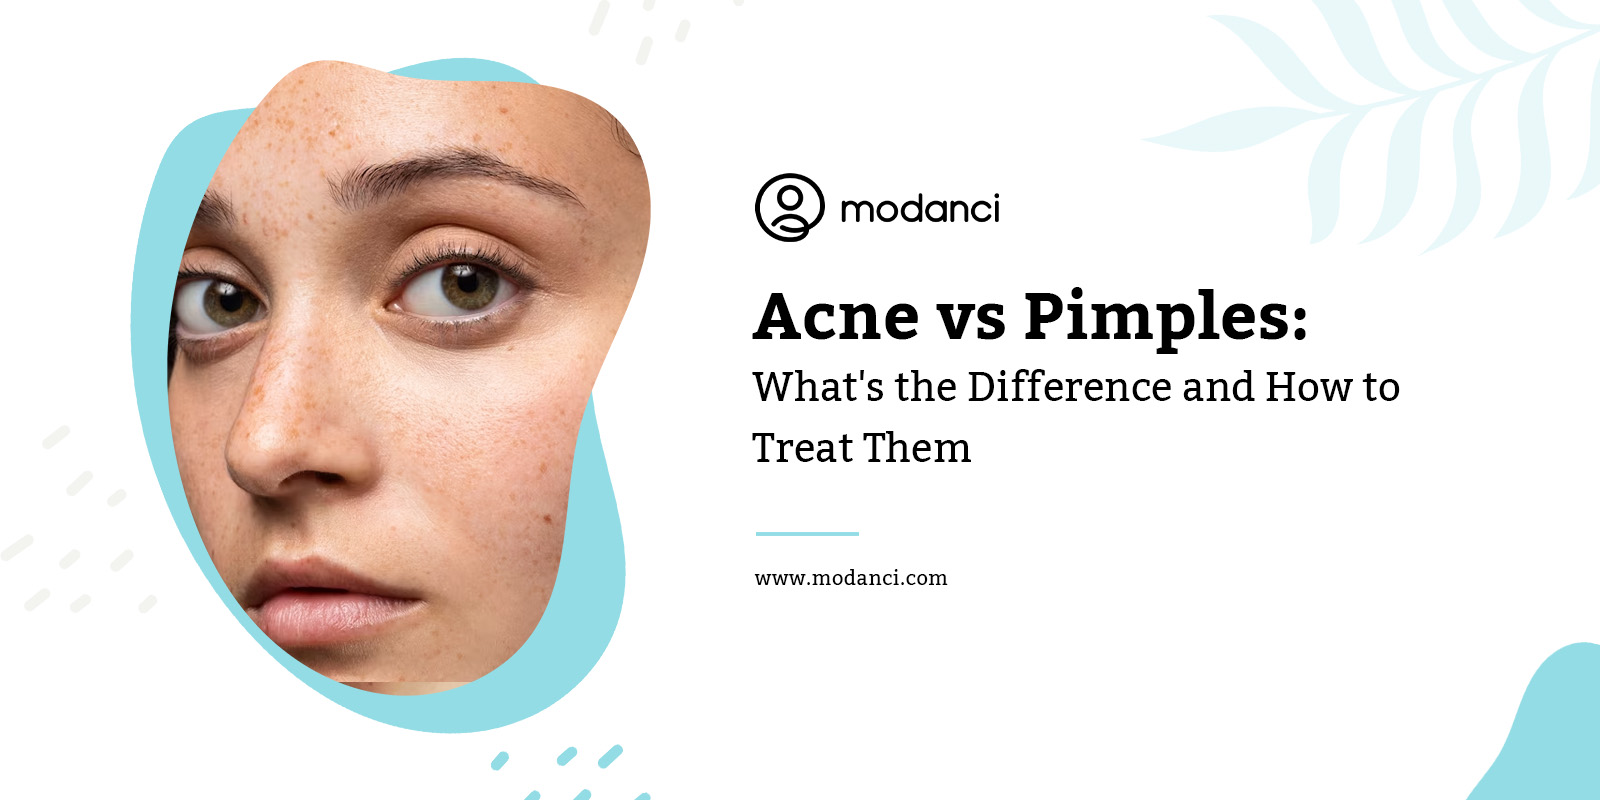 acne vs pimples